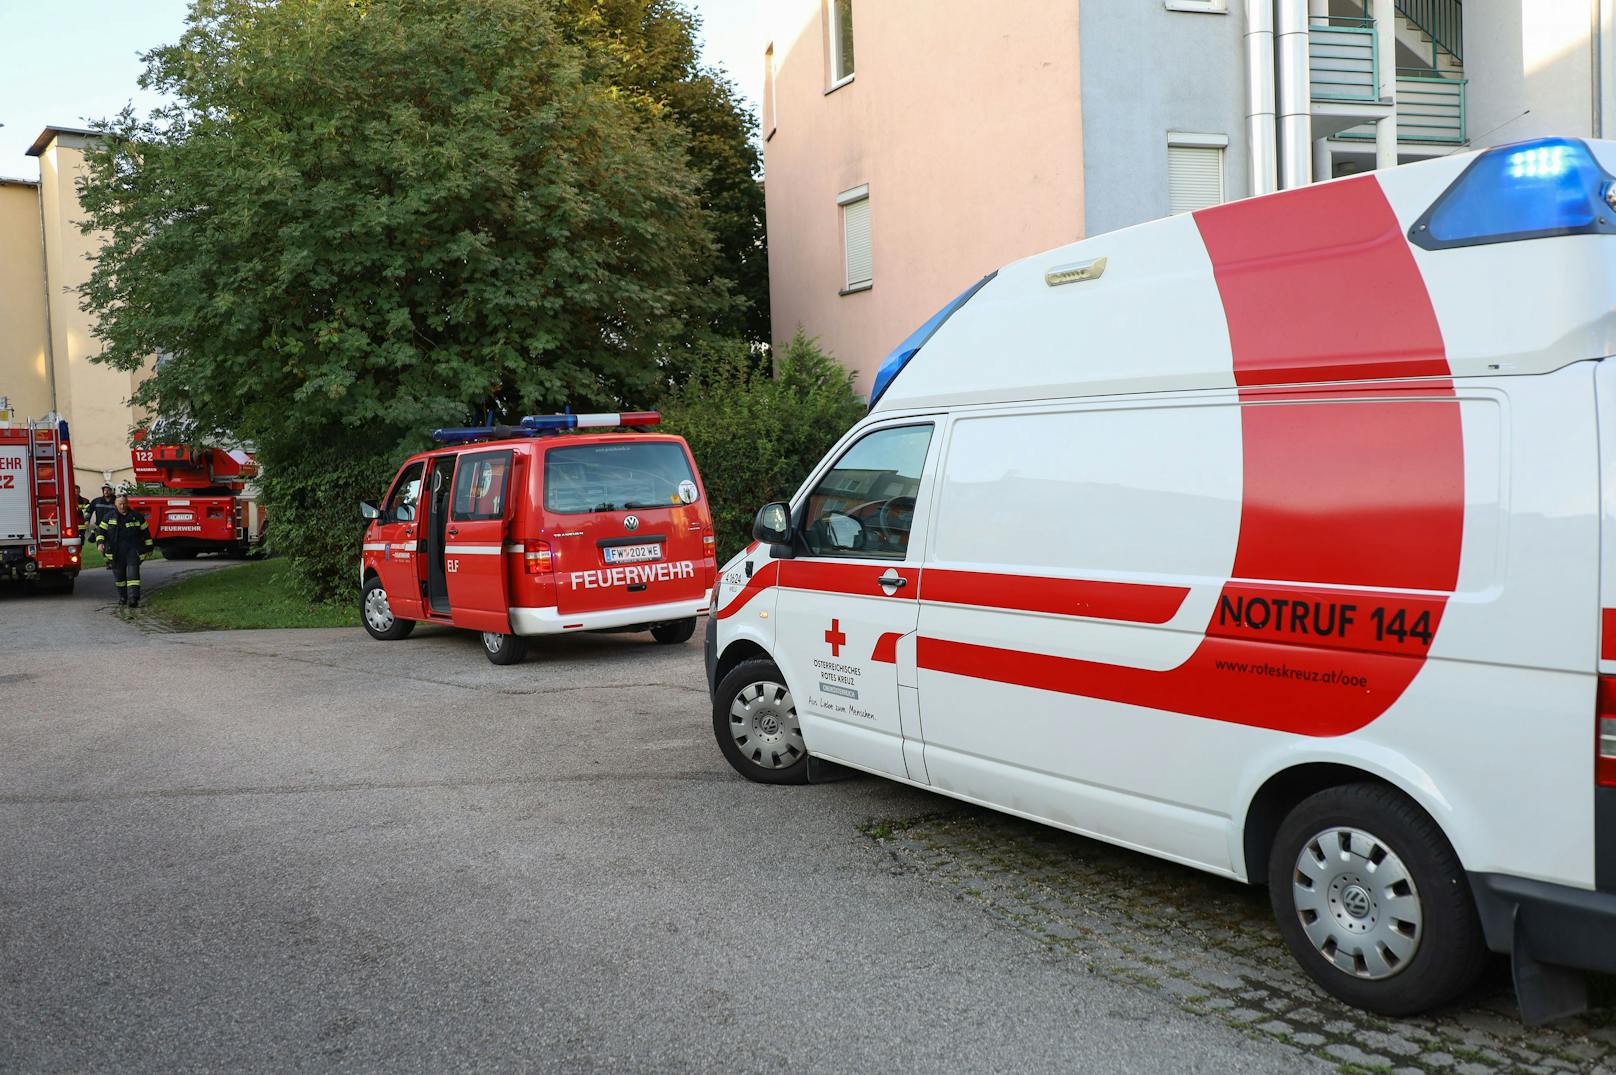 Ein Brand eines E-Bikes in einer Mehrparteienhauswohnung in Wels-Lichtenegg hat Samstagfrüh einen Verletzten gefordert.